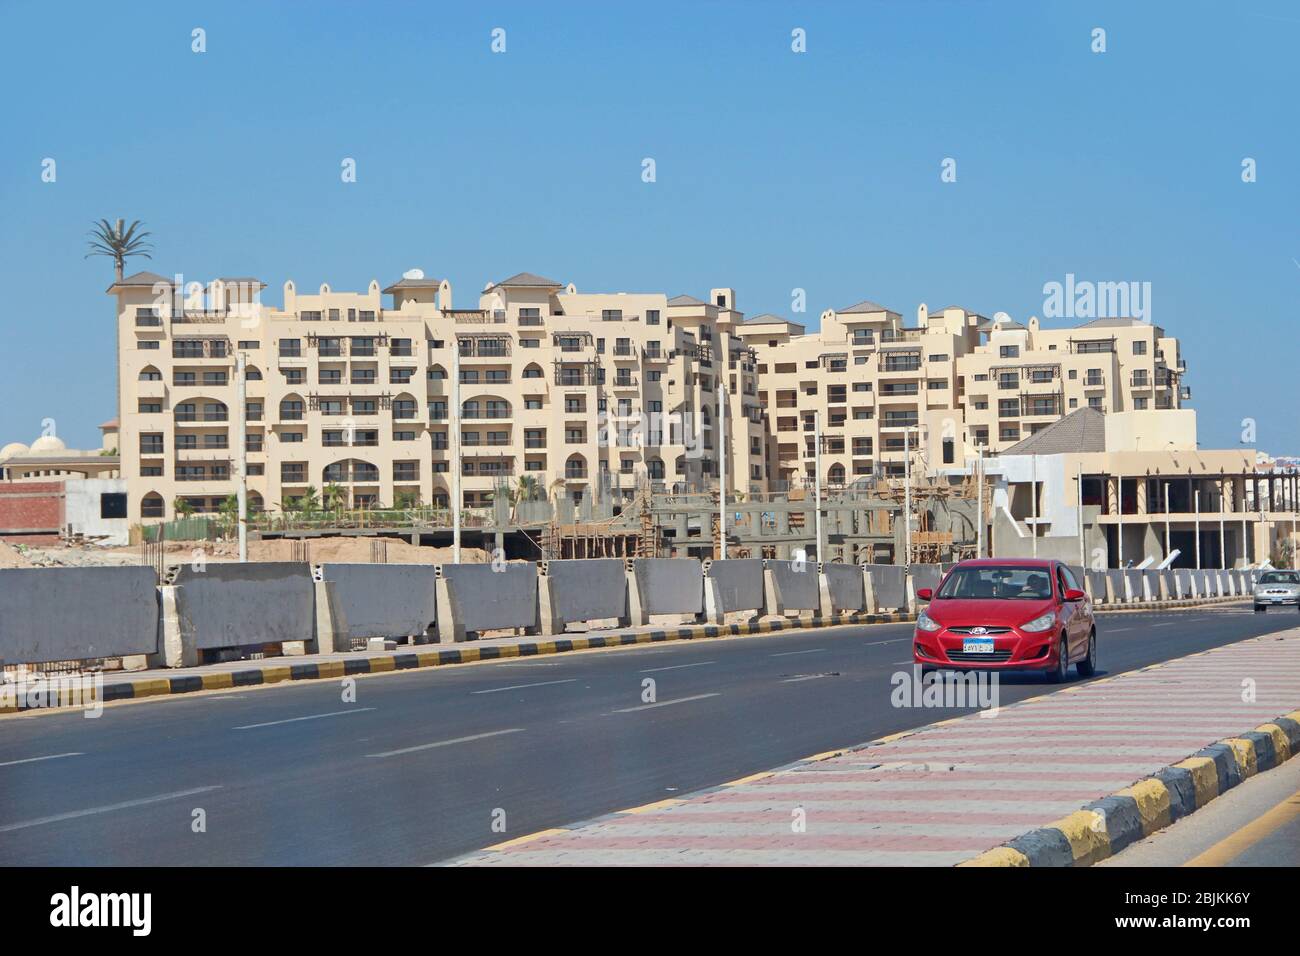 Panorama de la ciudad con coches de calle sobre edificios en Hurghada. Ciudad moderna con los coches en la autopista. El transporte y el tráfico en la autopista de la ciudad de Hurghada. Foto de stock